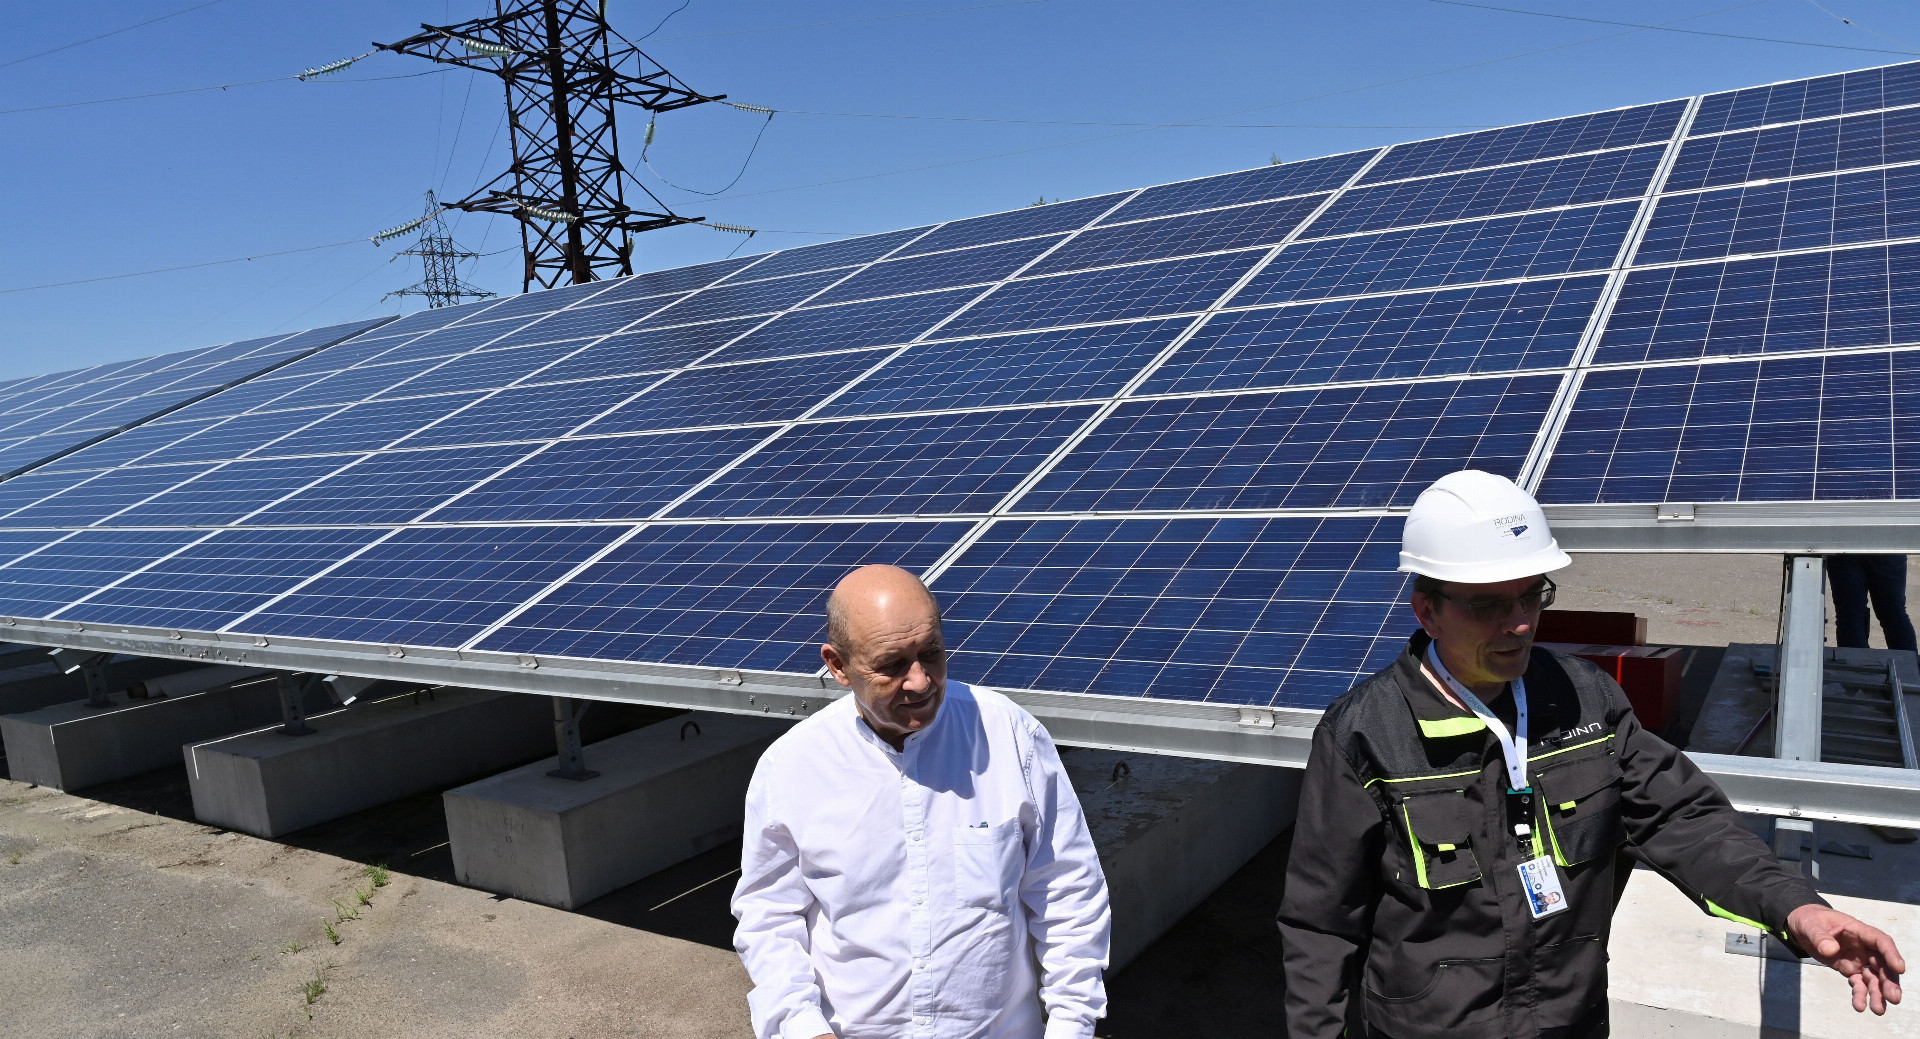 Francúzsky minister zahraničných vecí Jean-Yves Le Drian si solárnu elektráreň prišiel pozrieť minulú sobotu.